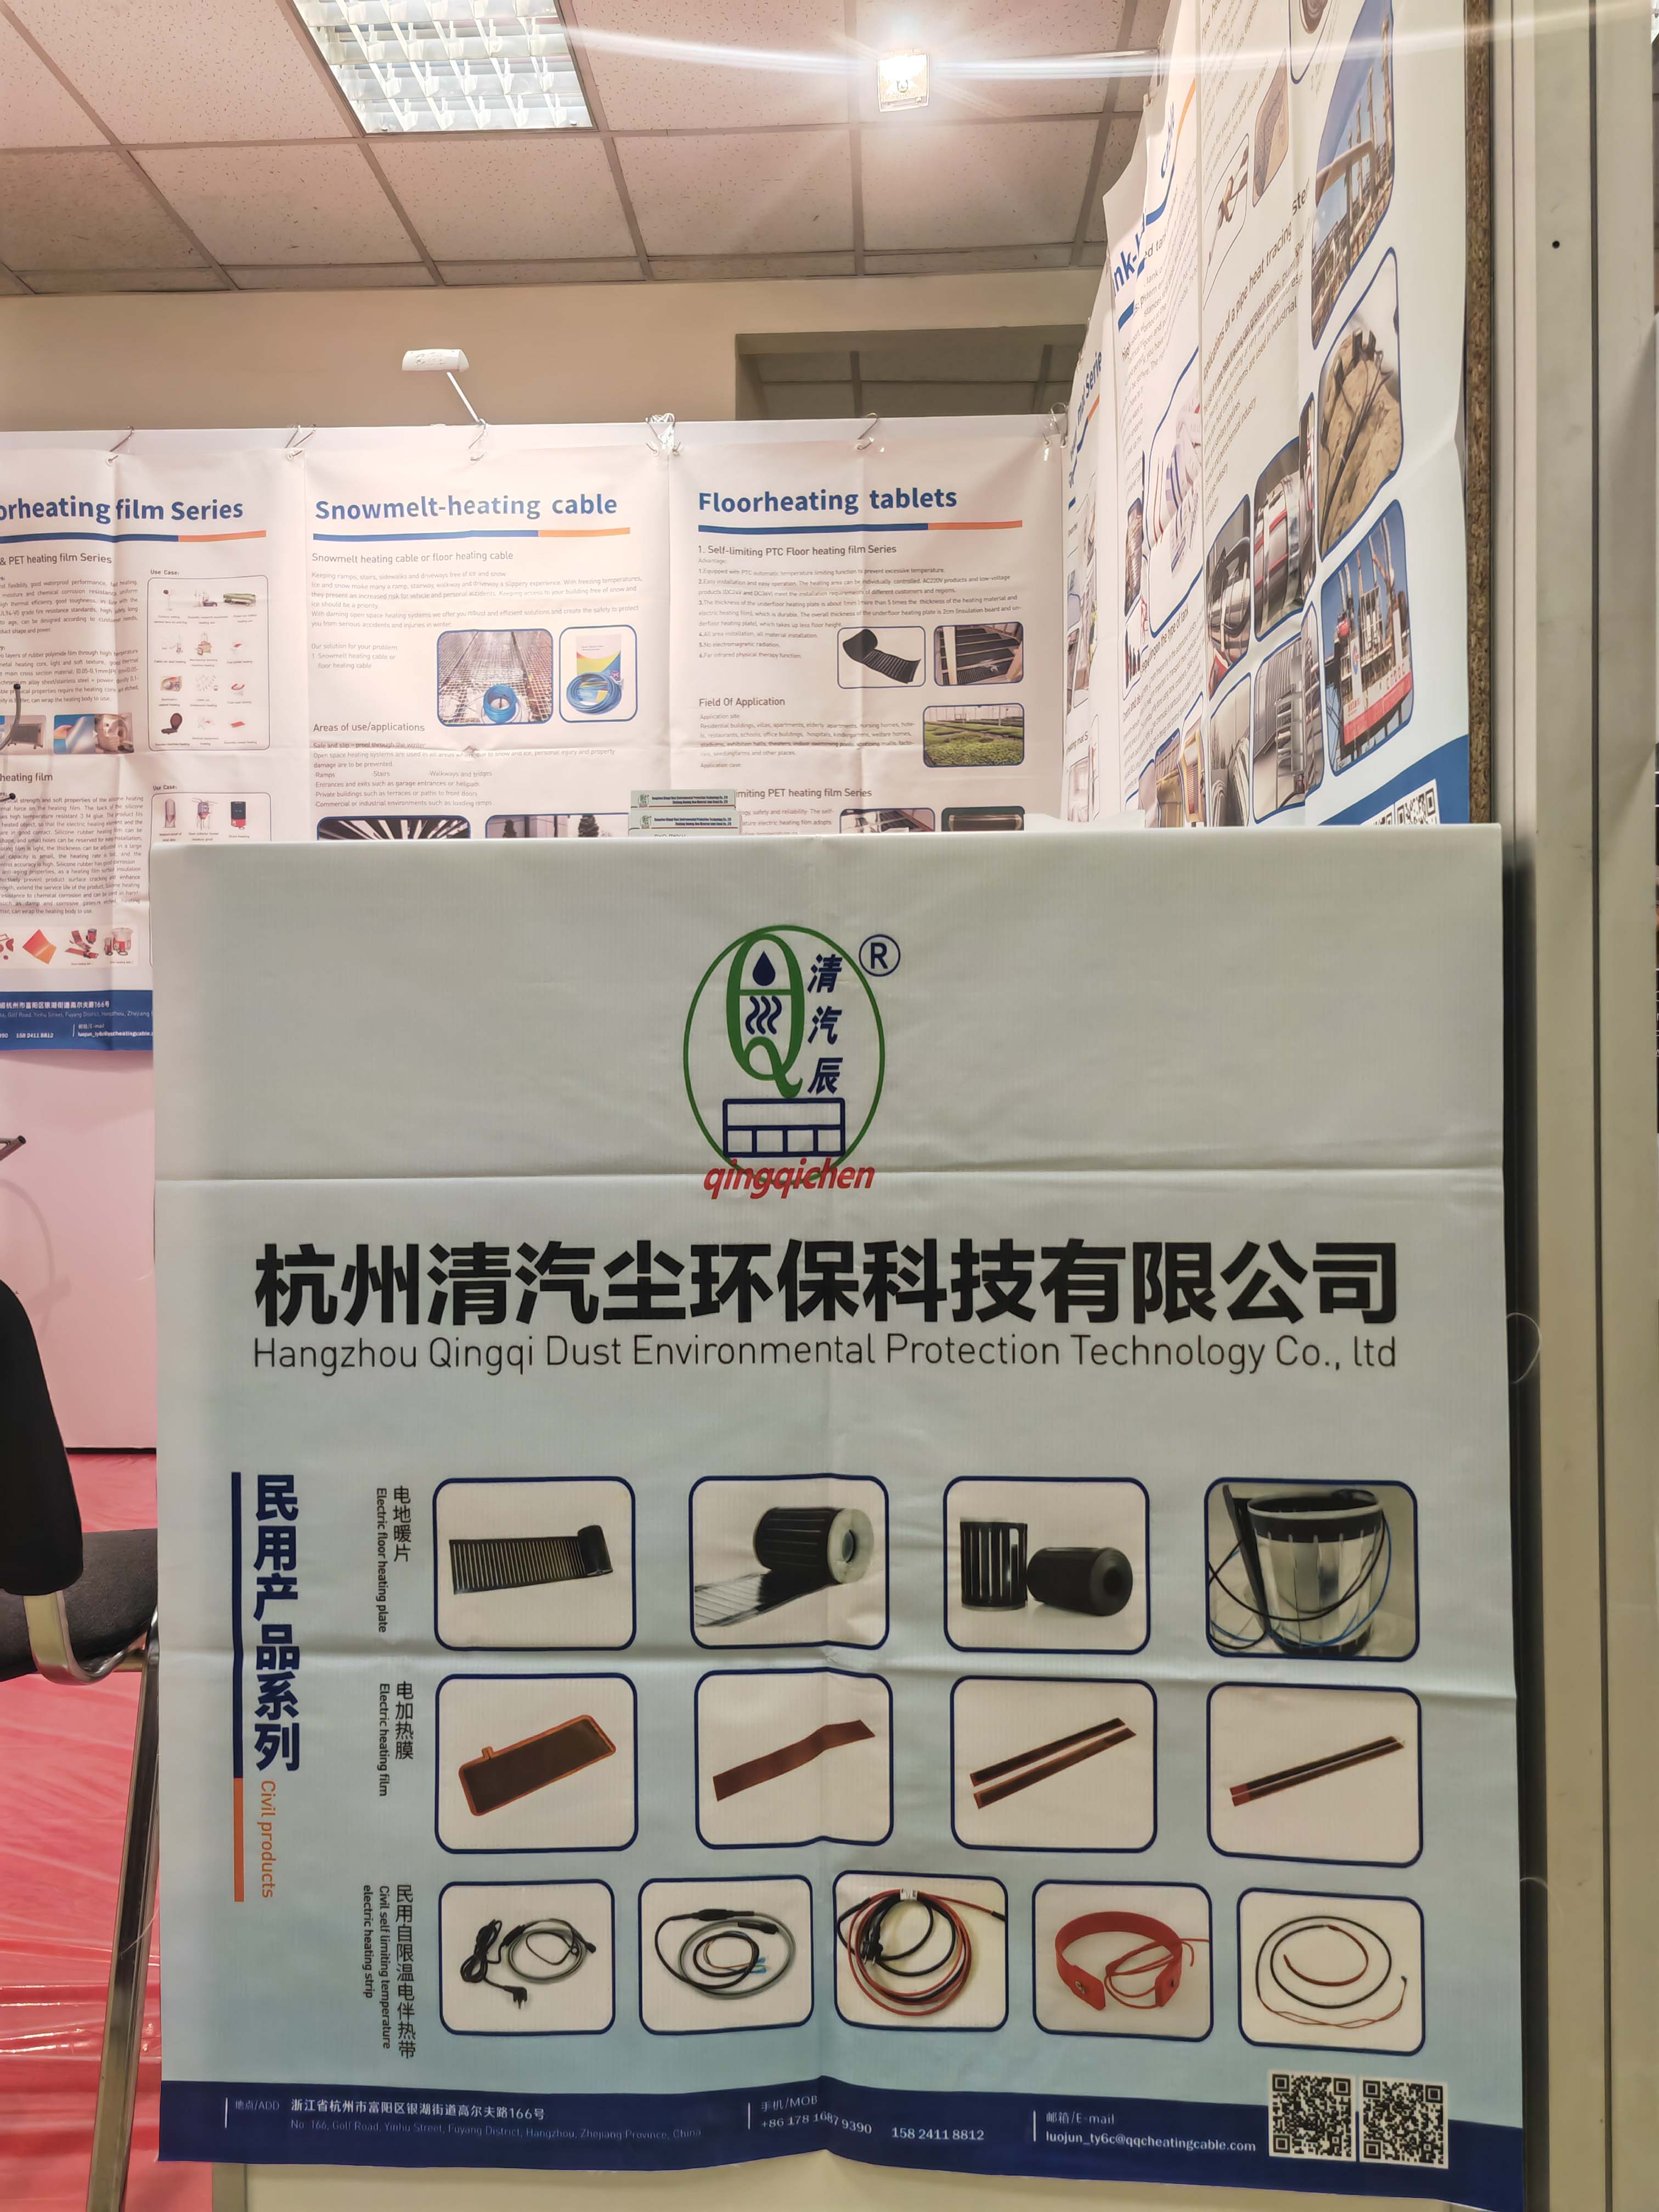  Hangzhou Qingqi Dust Environmental Protection Technology Co., Ltd.-k martxoaren 19tik 21era Moskun (Errusia) CabeX erakusketan, ongi etorria eman diezaiokete errusiar lagunei erakusketara orientabideak trukatzeko eta negoziatzeko 